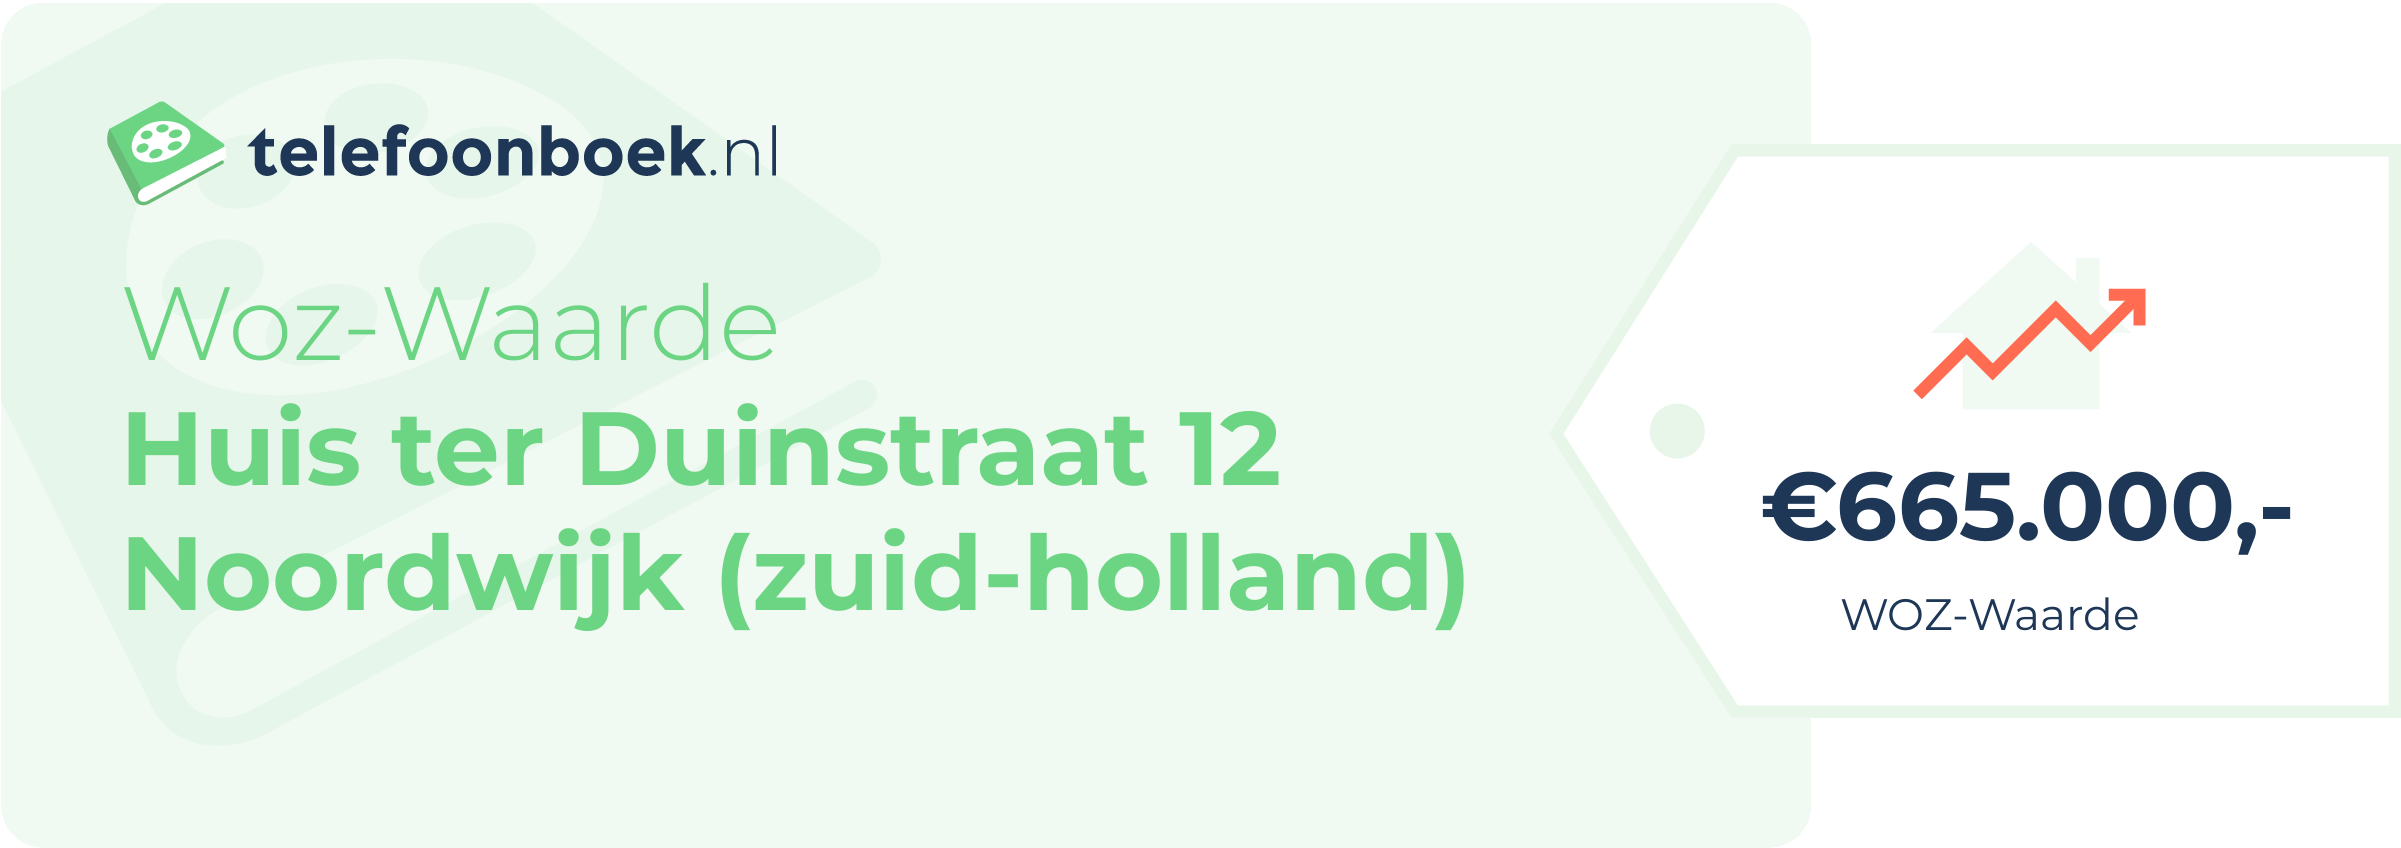 WOZ-waarde Huis Ter Duinstraat 12 Noordwijk (Zuid-Holland)